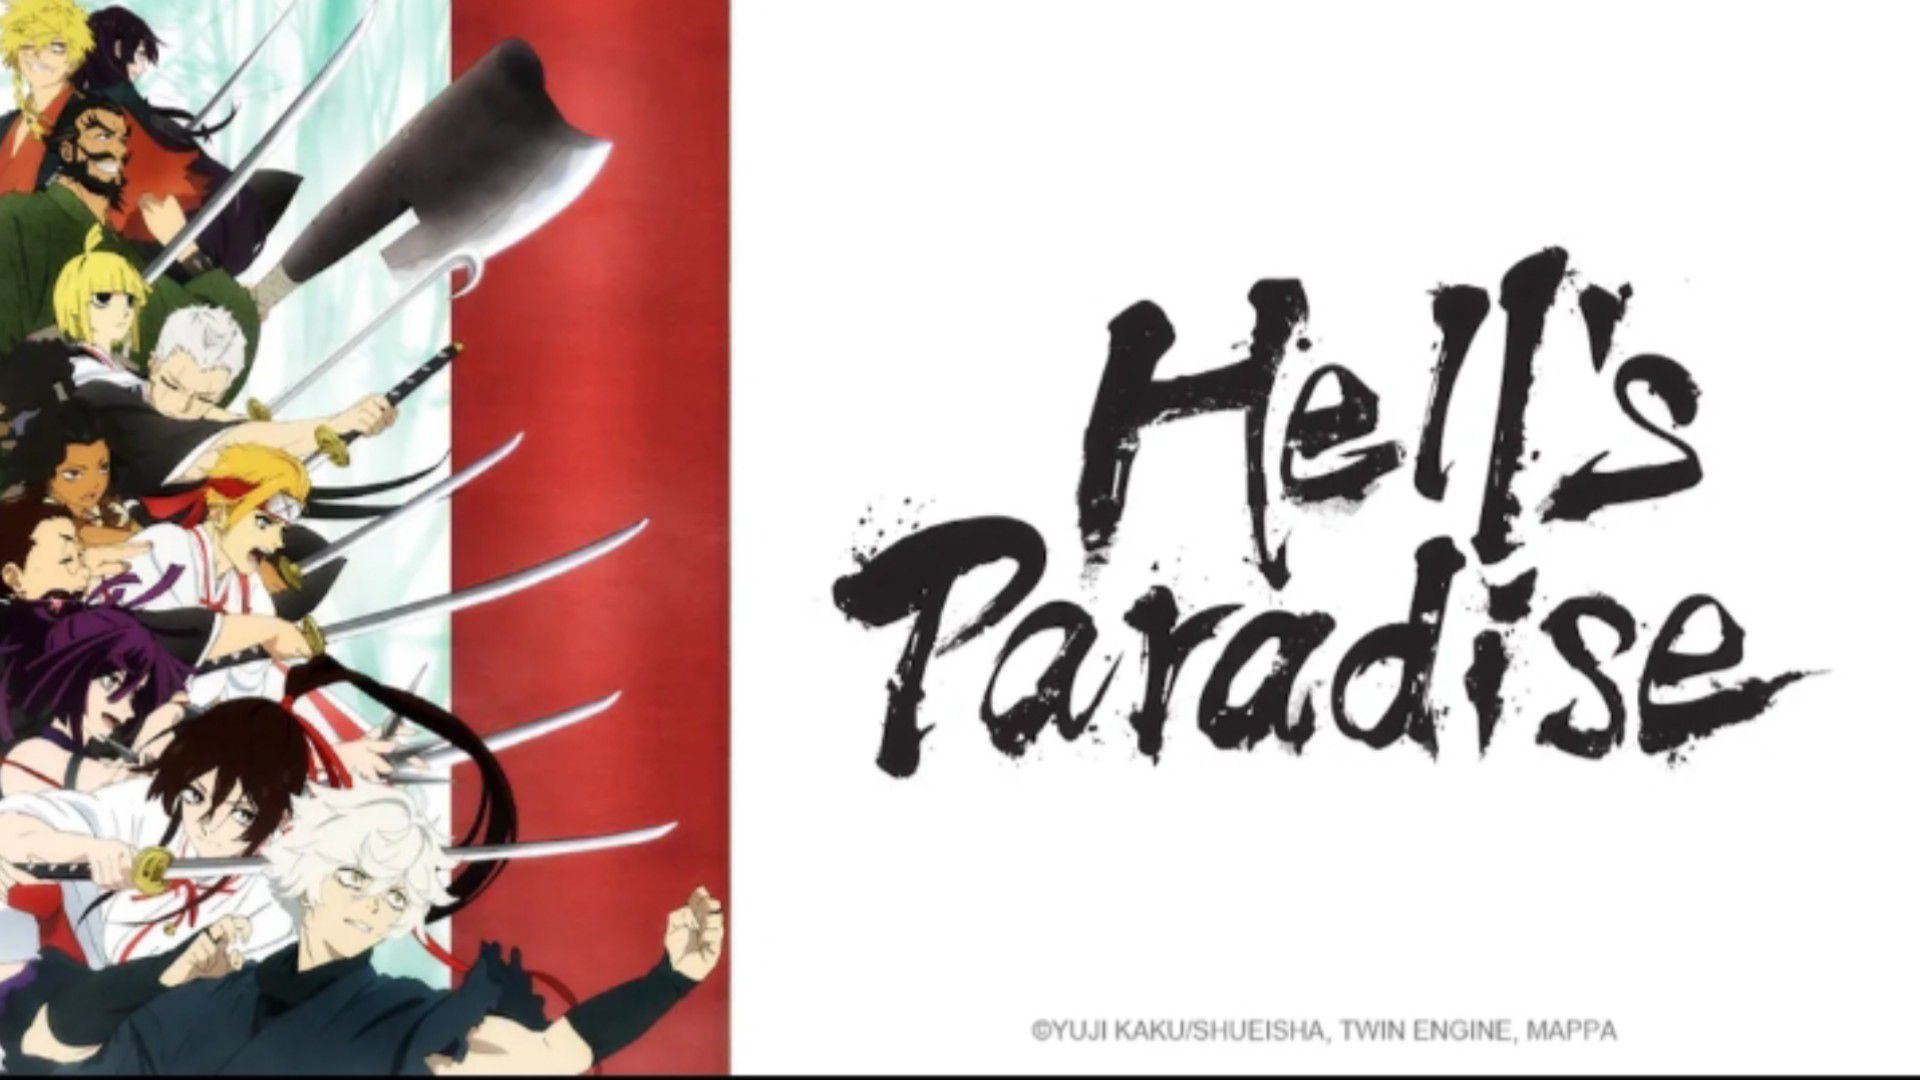 Hell's Paradise Episode 3 (1080p) - BiliBili